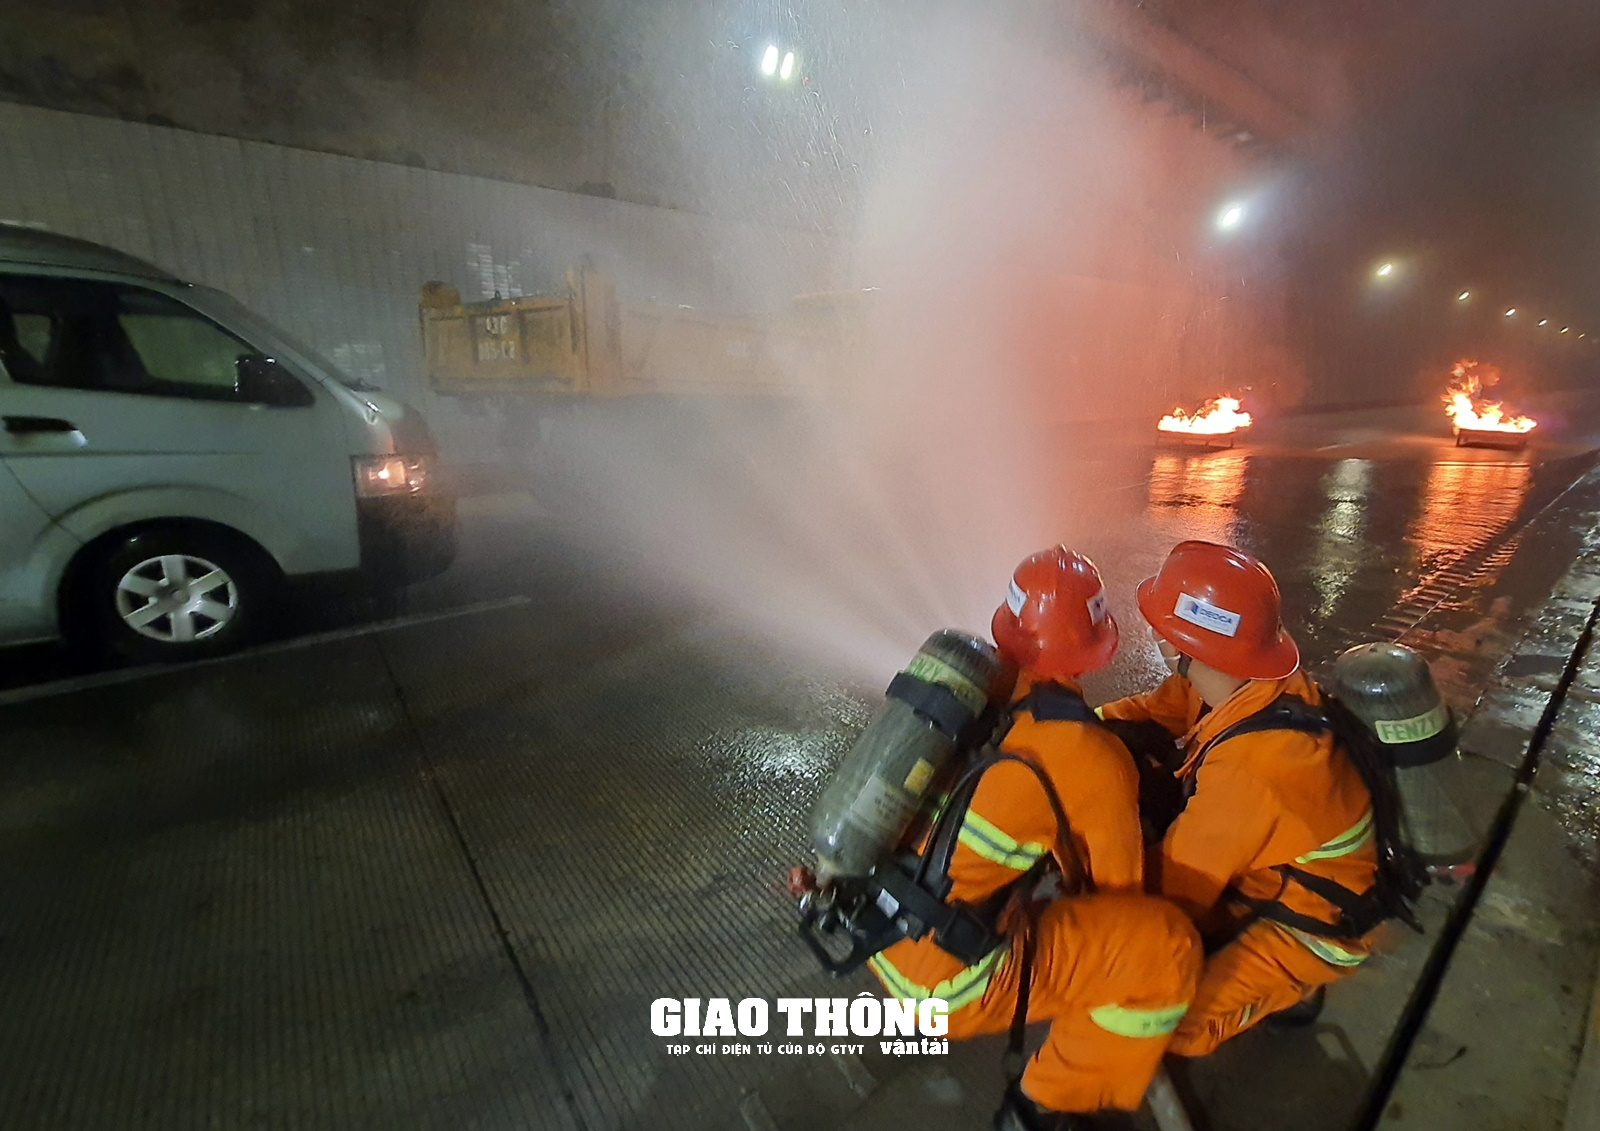 Cận cảnh việc cứu nạn, cứu hộ xe bị tai nạn bốc cháy trong hầm Hải Vân - Ảnh 8.